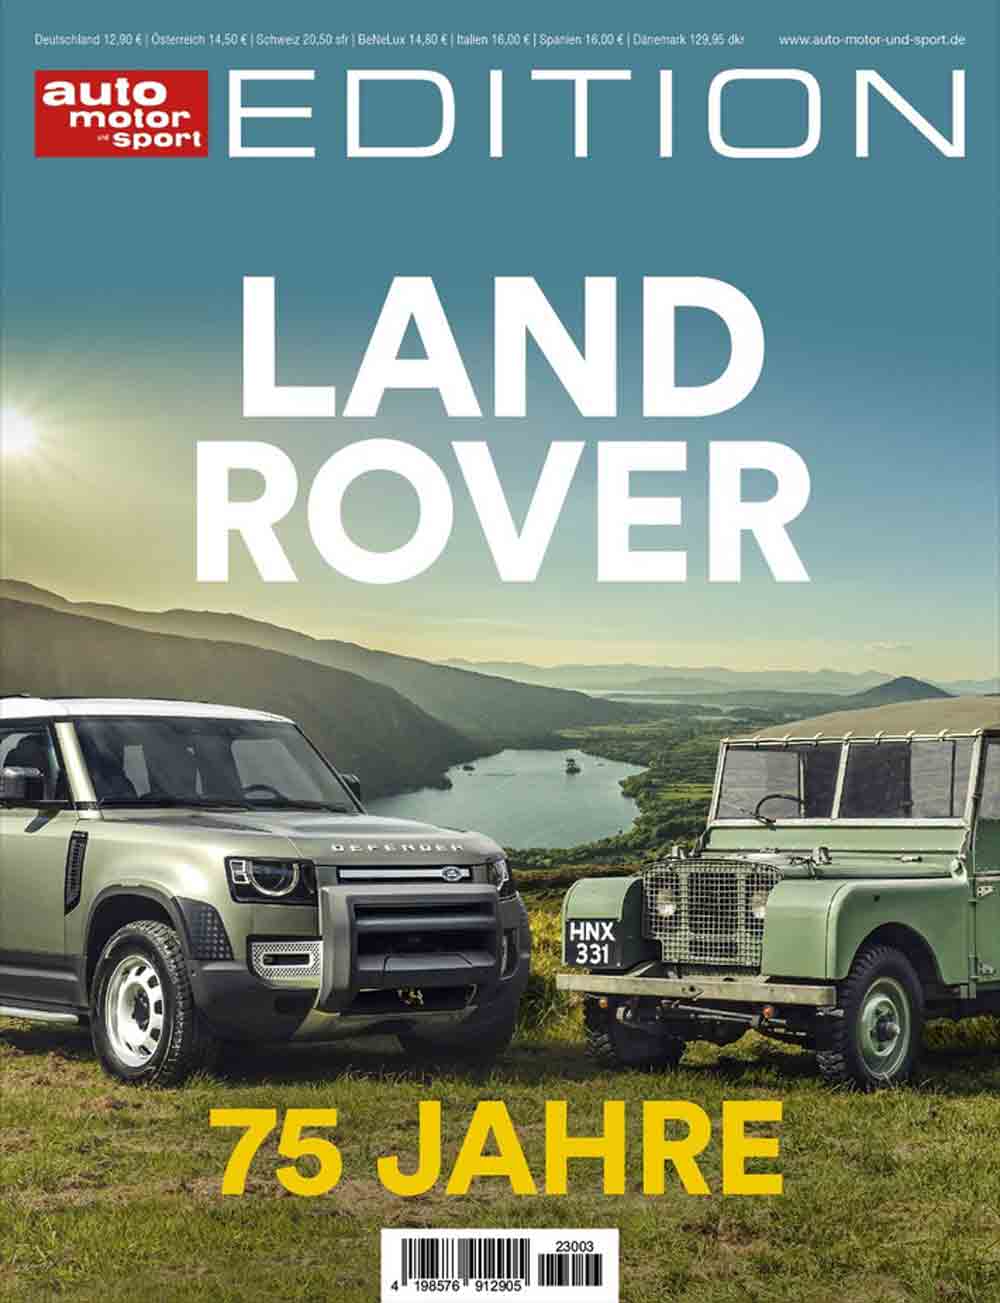 75 Jahre Land Rover: neue Edition von Auto, Motor und Sport zum Jubiläum